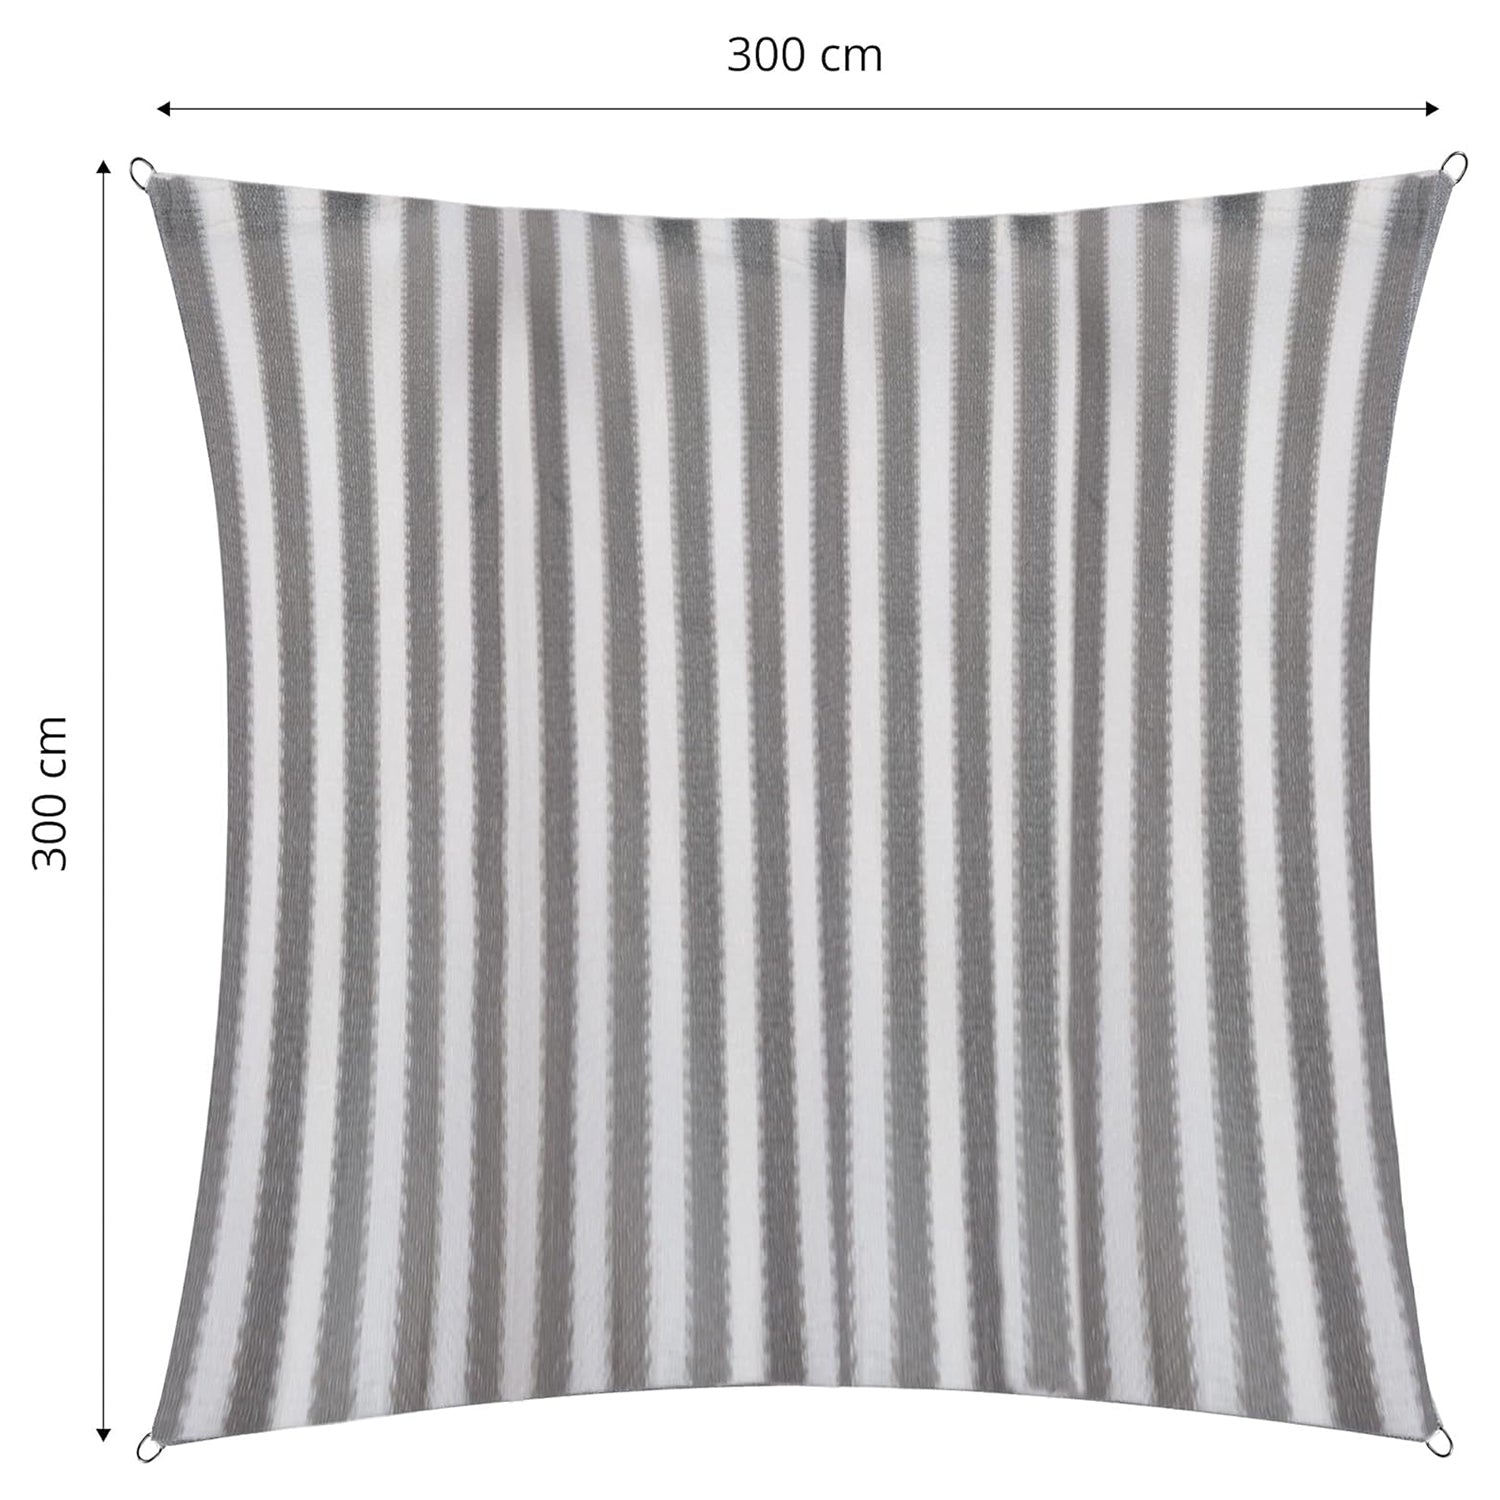 Sonnensegel 100% HDPE mit Stabilisator für UV-Schutz - Quadrat 3 x 3 Meter - Grau/Weiß